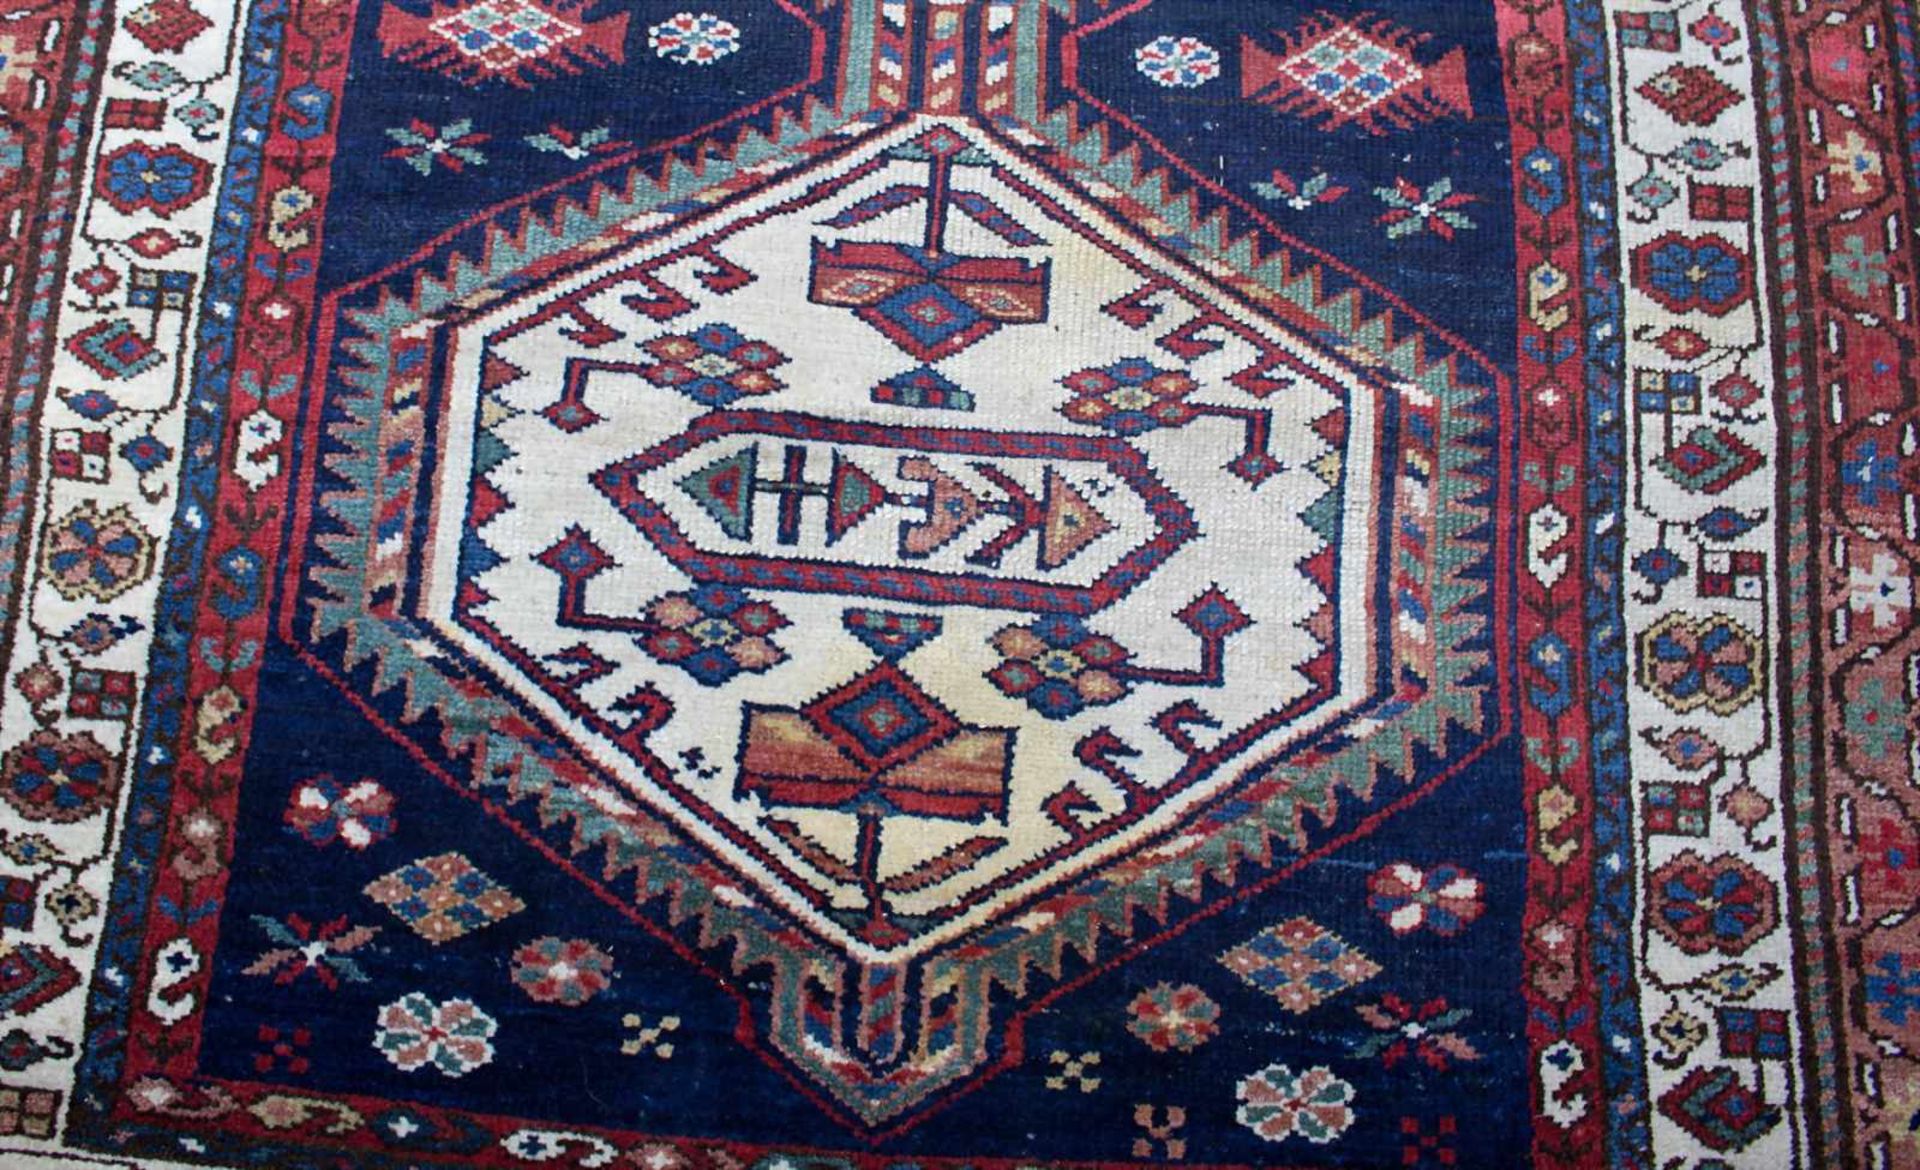 Orientteppich 'Hamadan' / An oriental carpet 'Hamadan'Material: Wolle auf Baumwolle, Maße: 112,5 x - Bild 3 aus 4